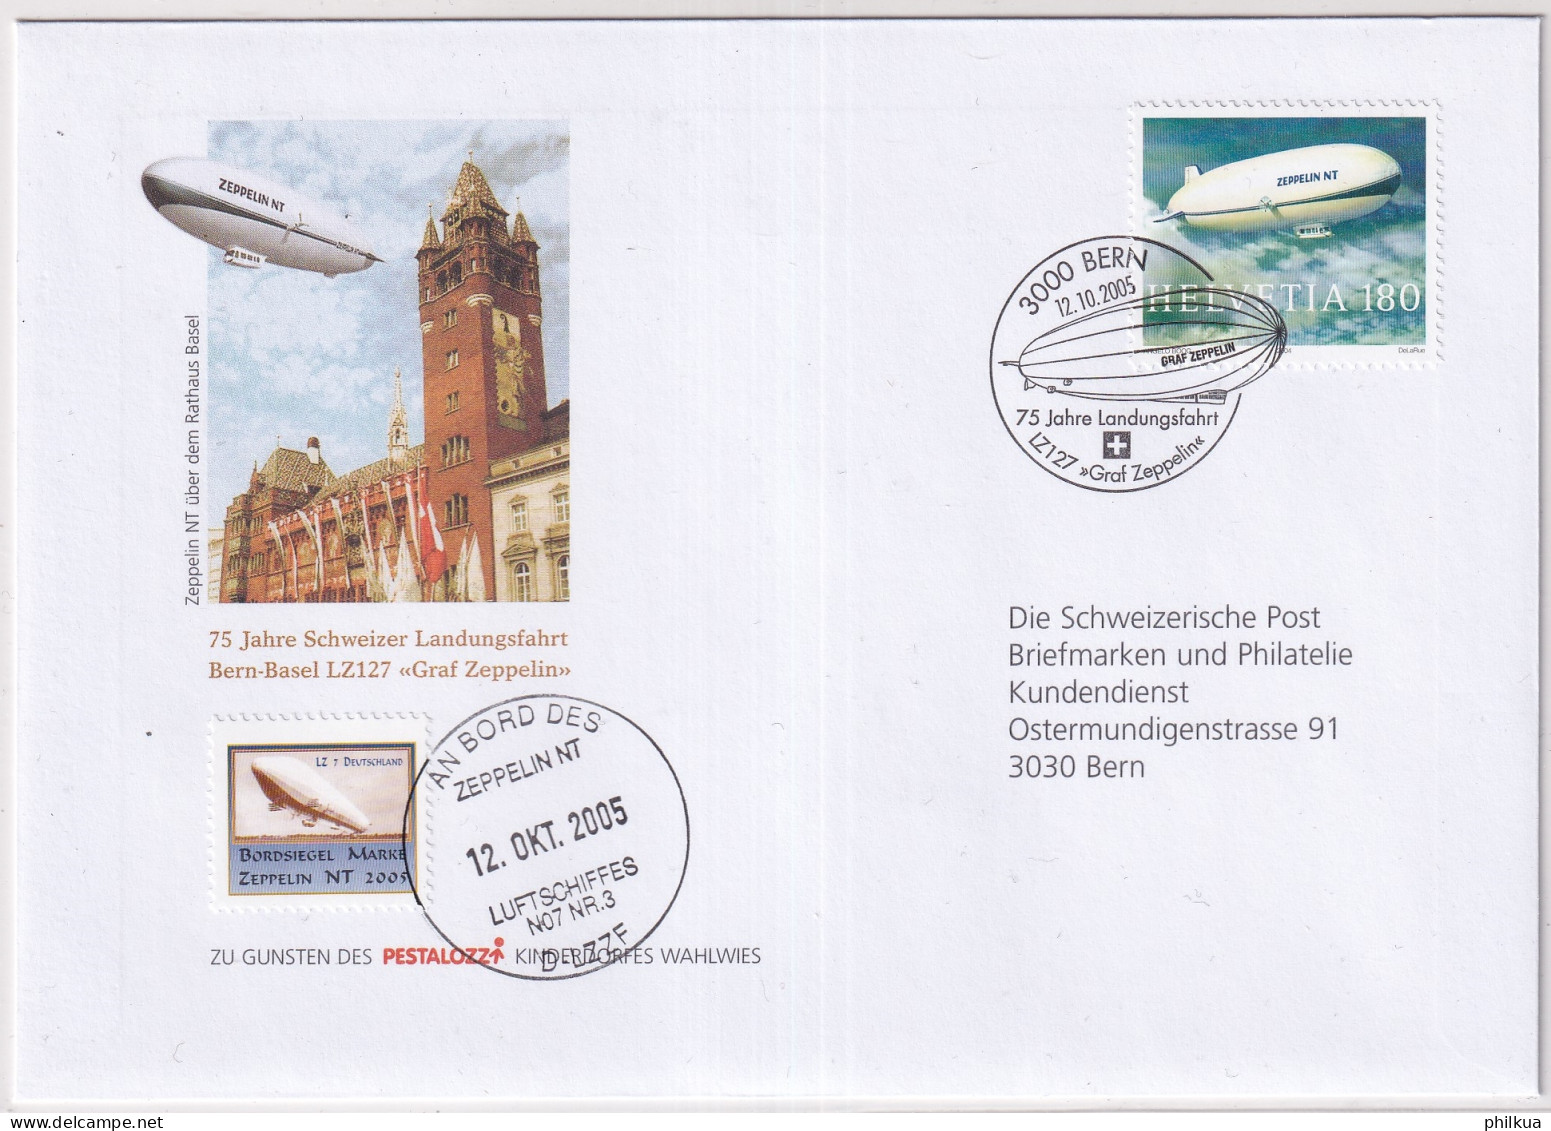 1121 / Michel 1879 Auf Illustriertem  Brief Mit Sonderstempel An Bprd Des Zeppelin NT Mit Vignette - Covers & Documents